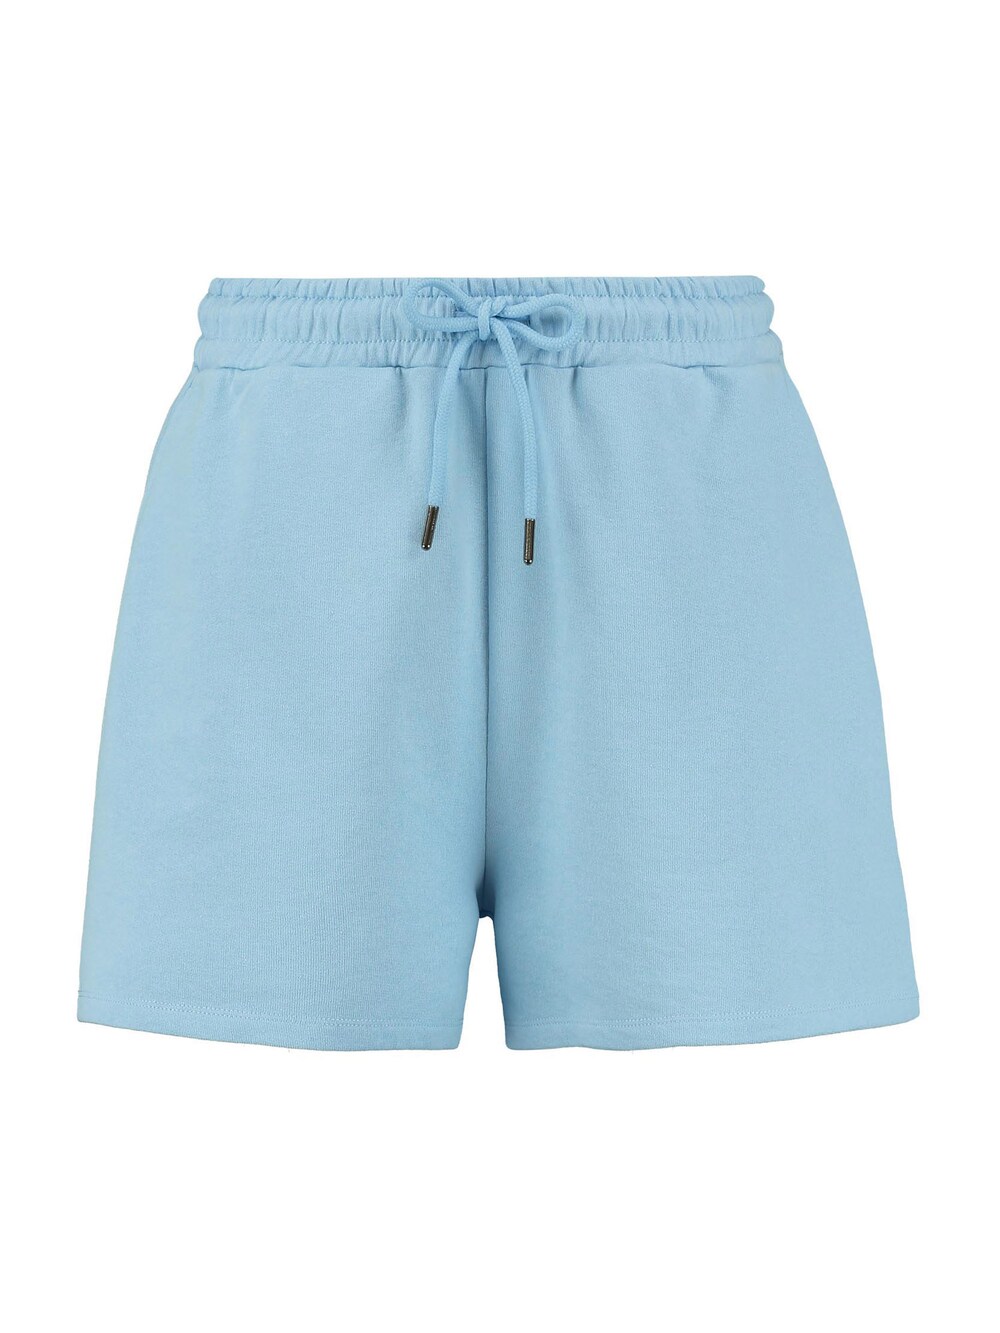 Обычные брюки Shiwi MIAMI, светло-синий